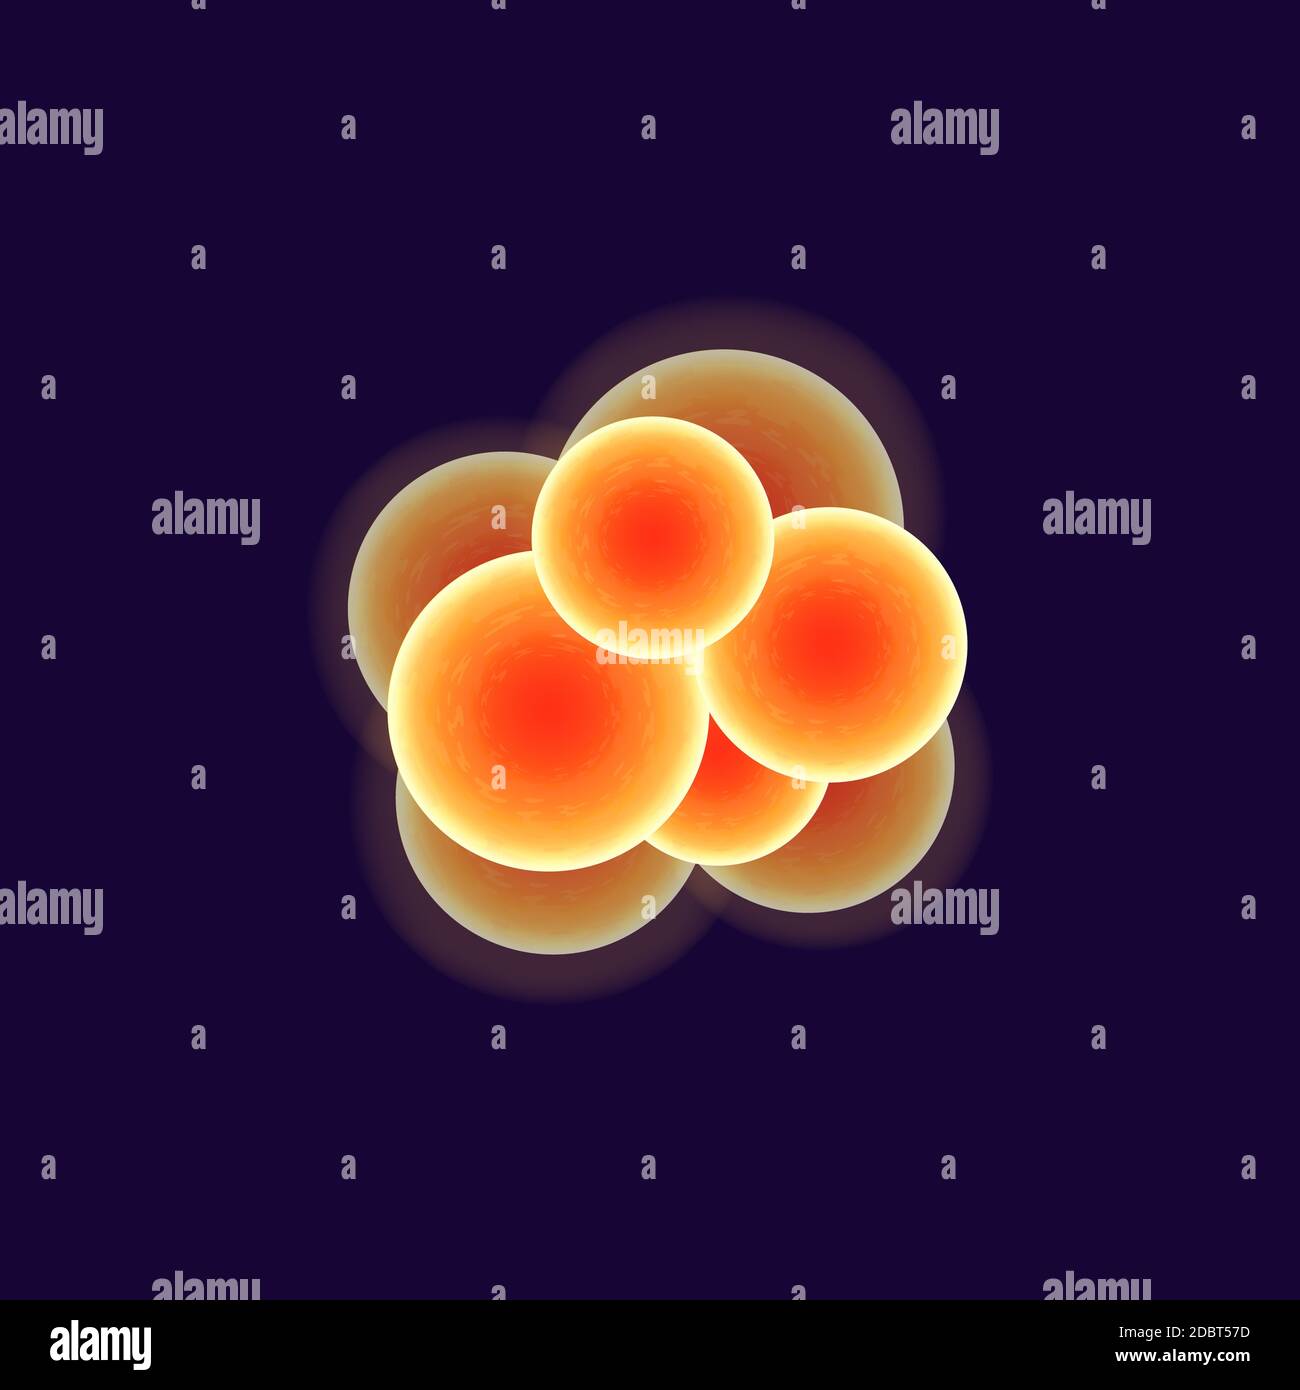 Illustration vectorielle réaliste de cellules de bactéries cocci. Sphères connectées, organisme pathogène. micro-organisme de forme ronde orange isolé en 3d sous microsco Banque D'Images